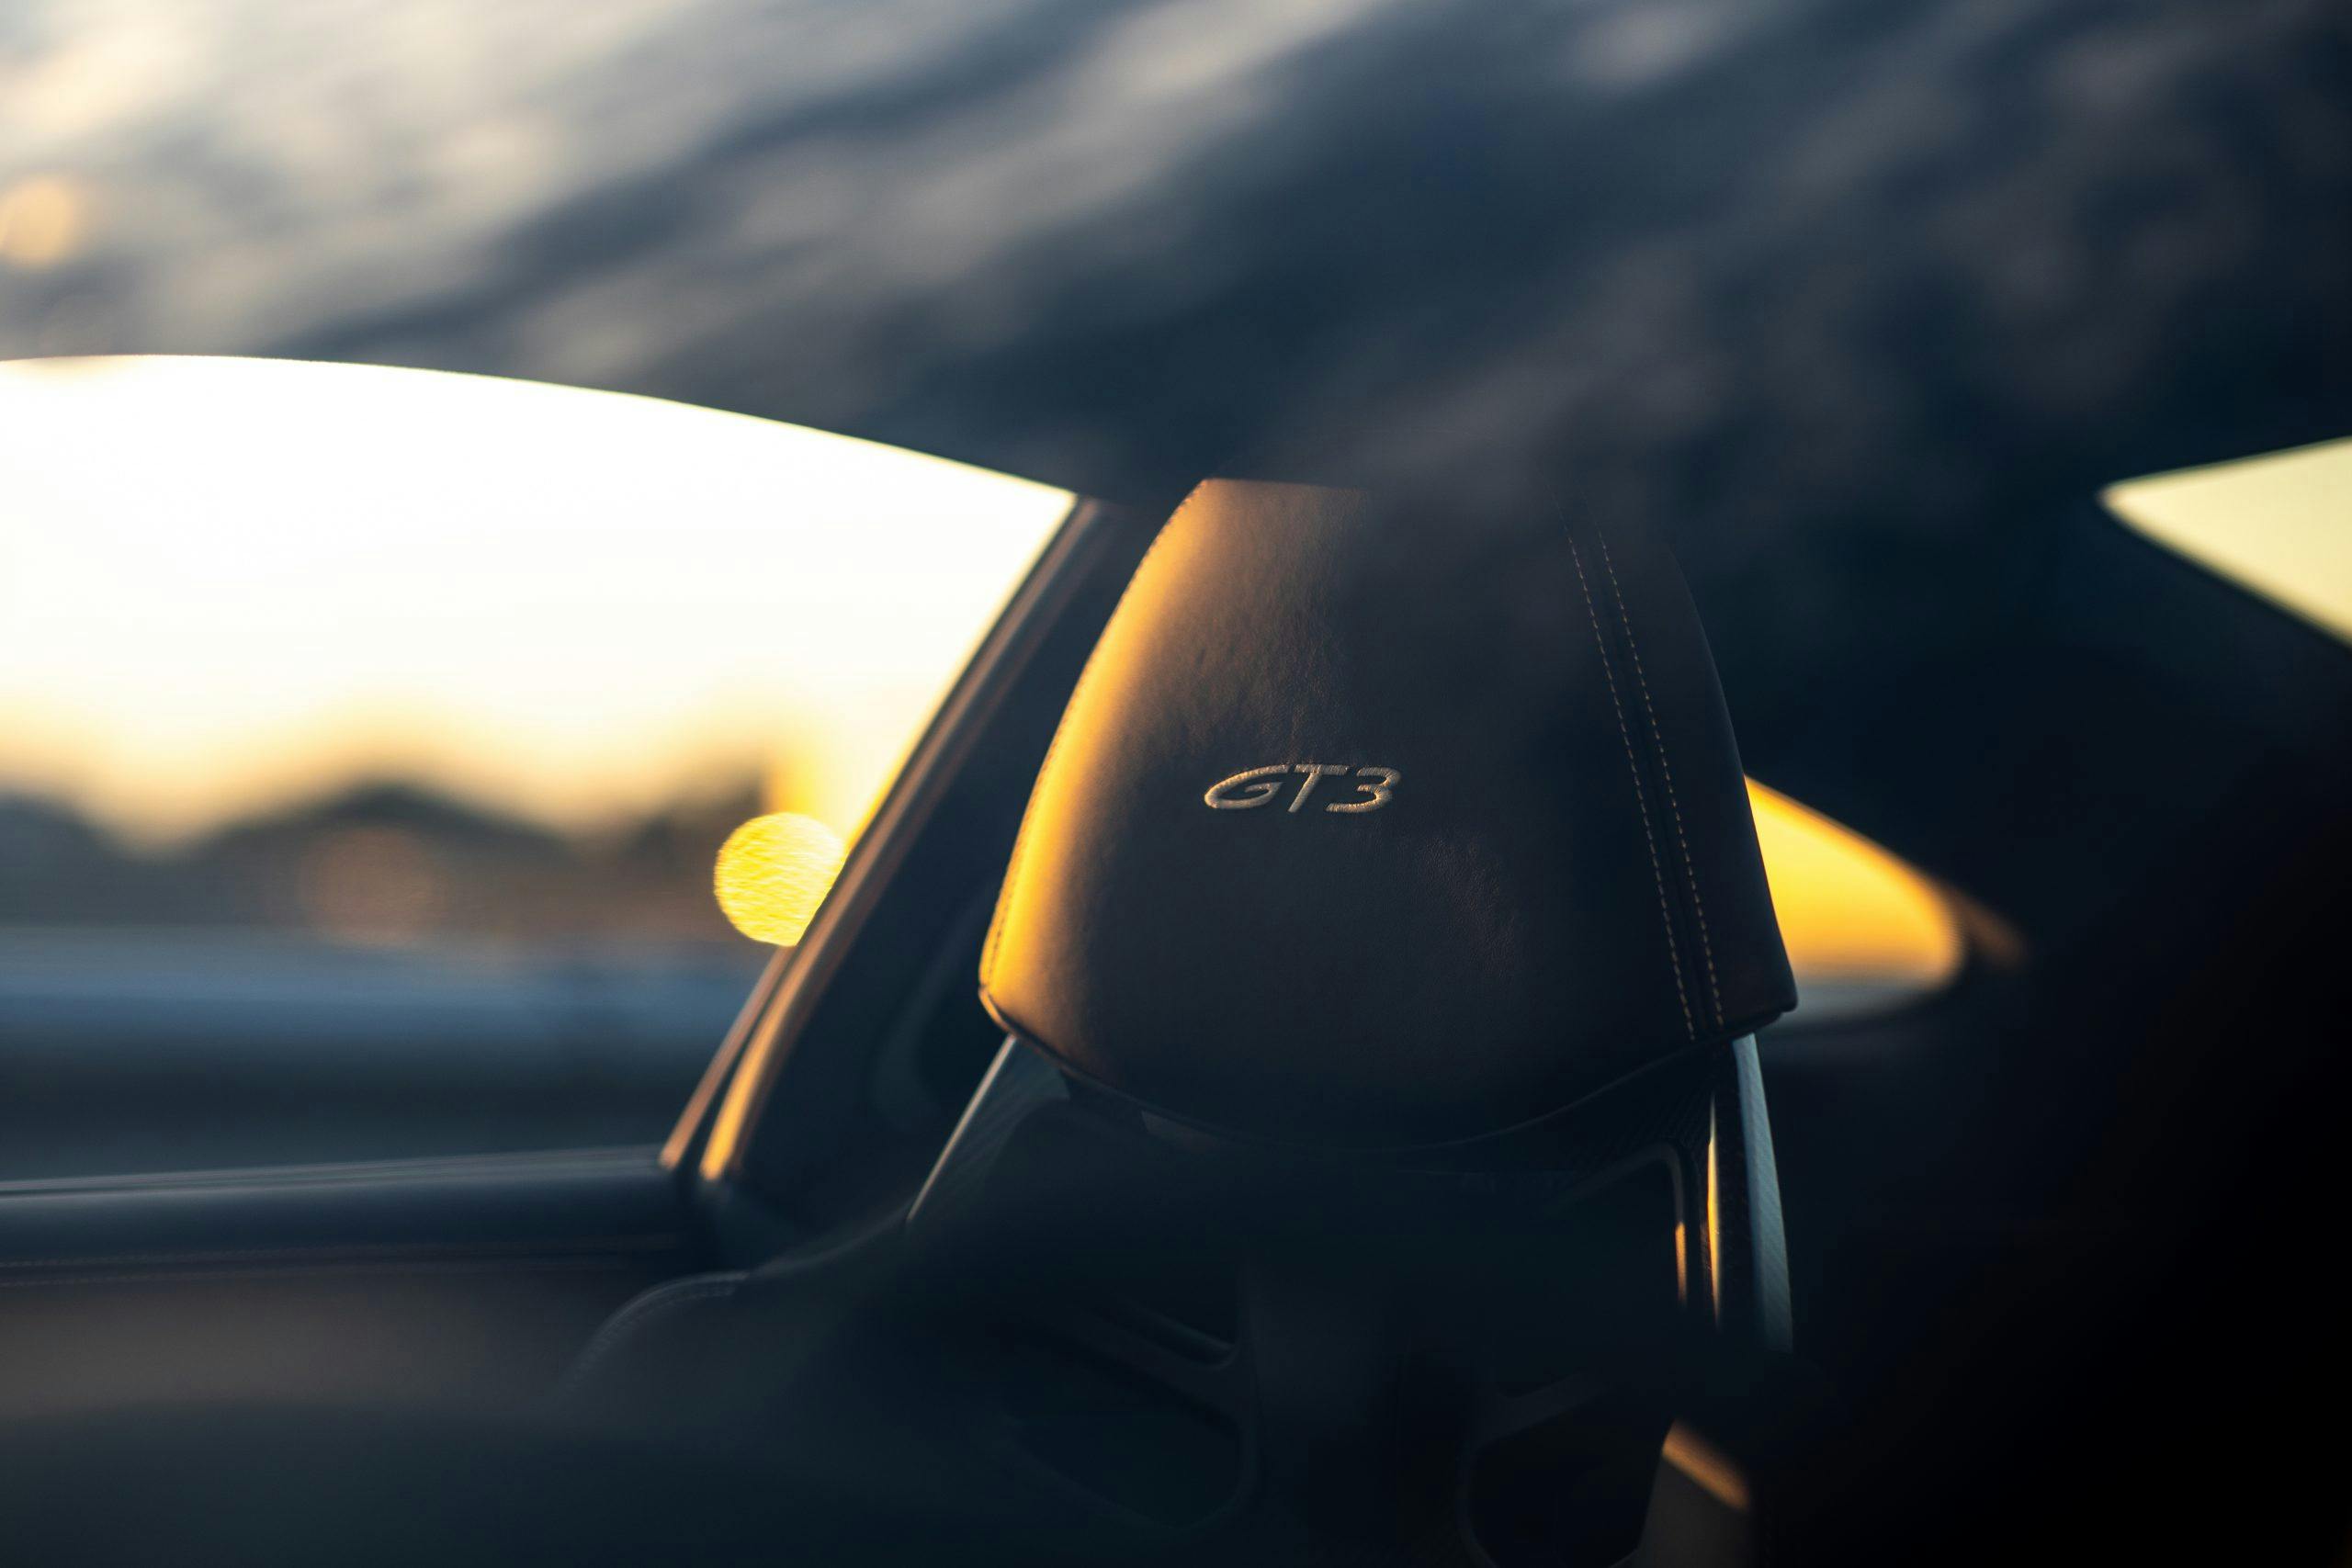 Porsche GT3 interior seat headrest through glass